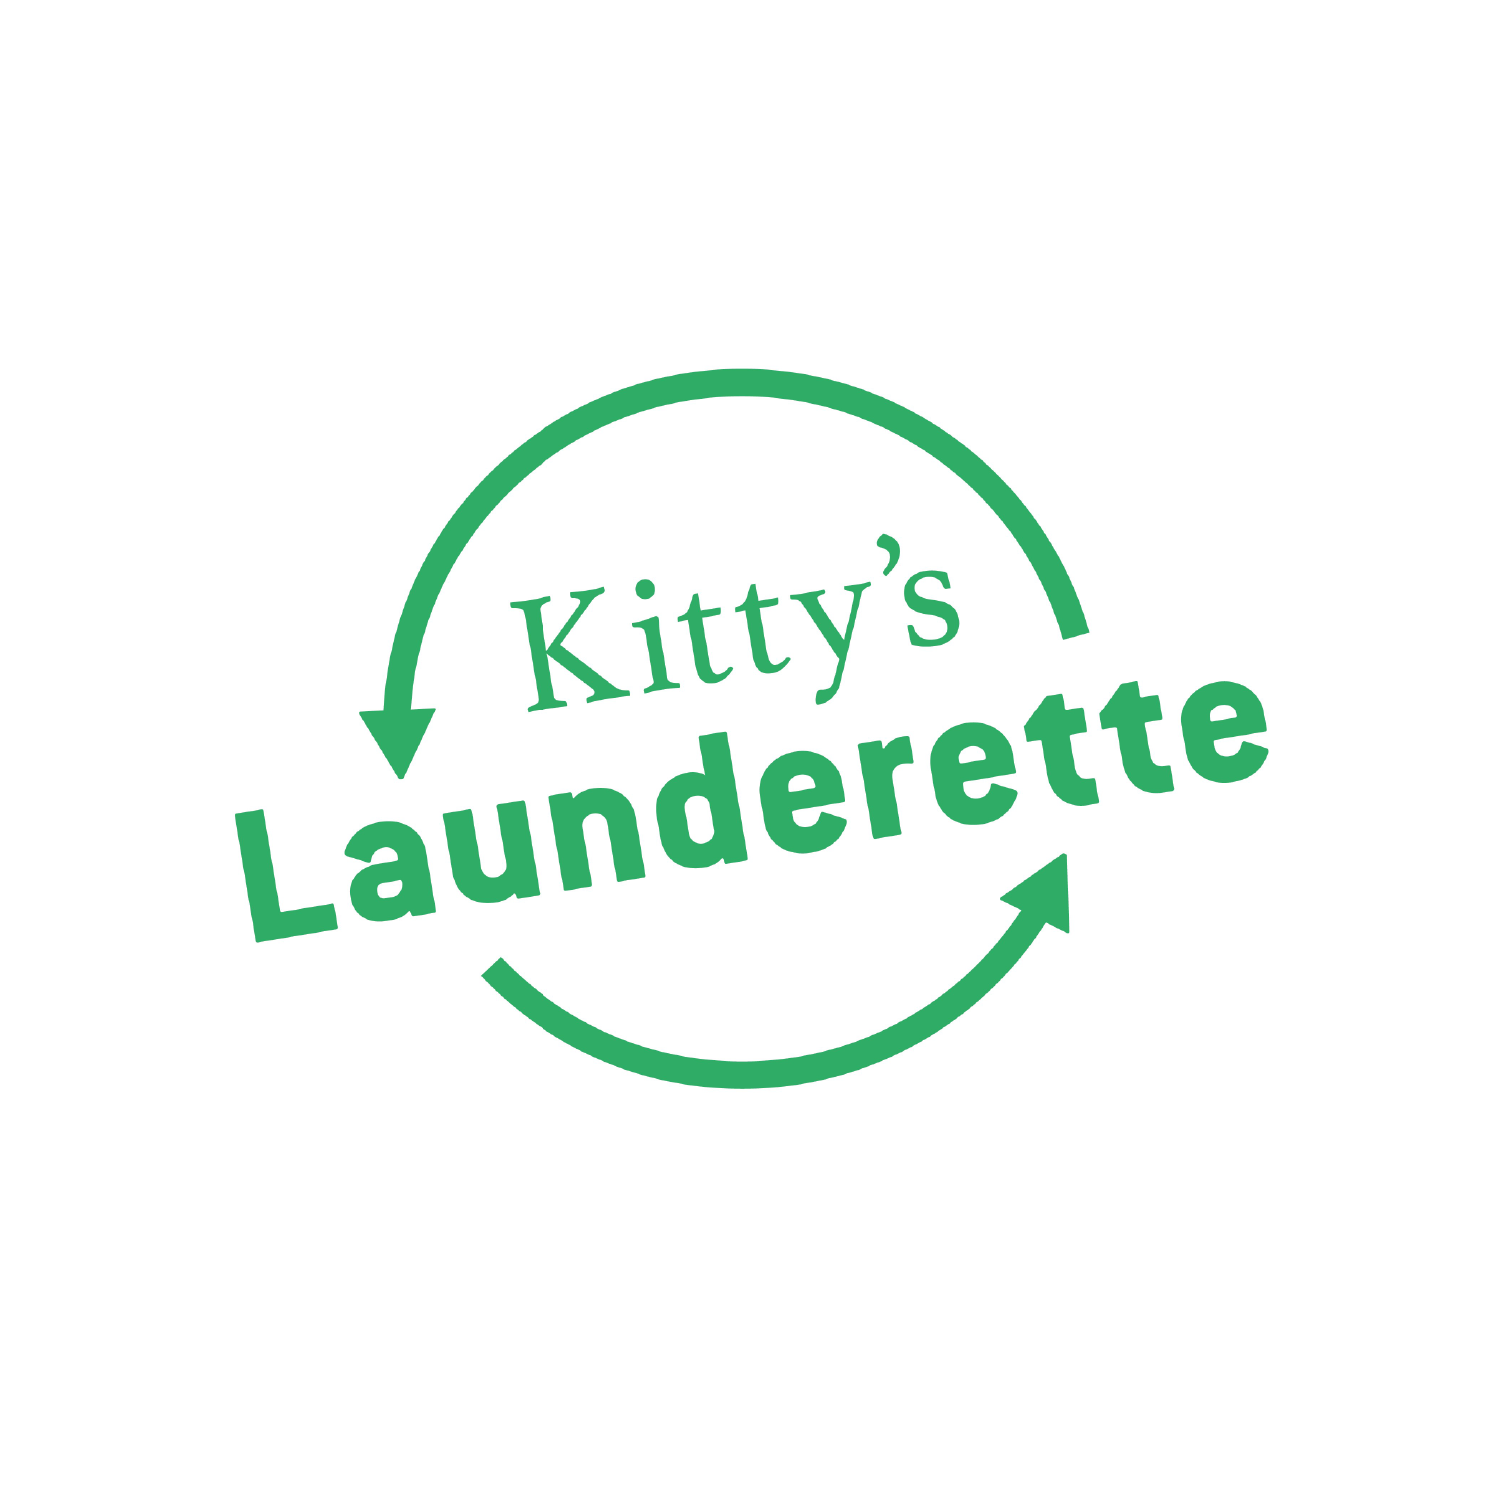 Kitty’s Launderette logo